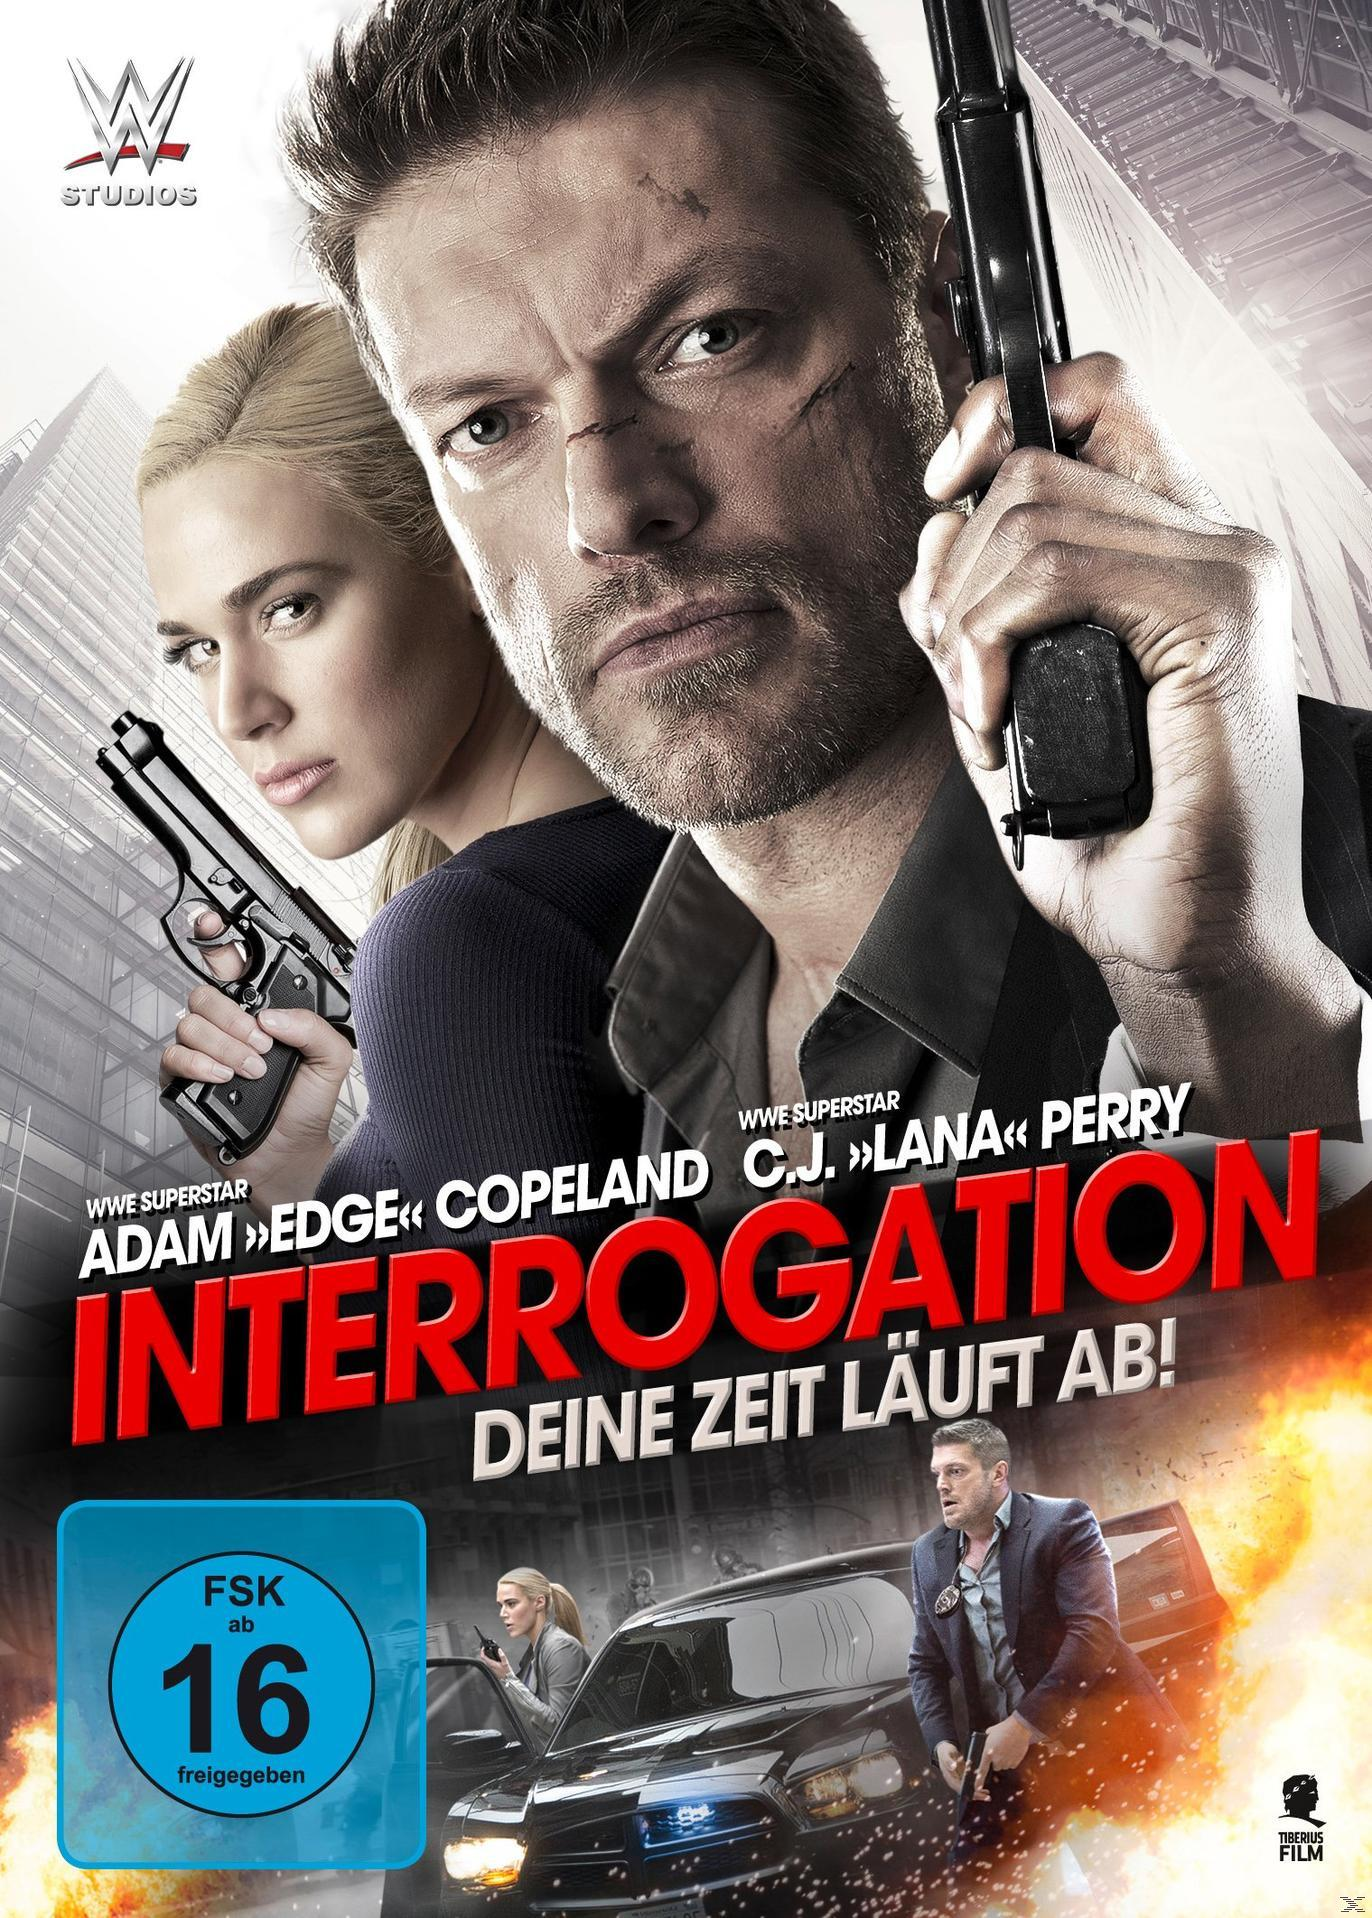 Zeit Deine - DVD Interrogation läuft ab!